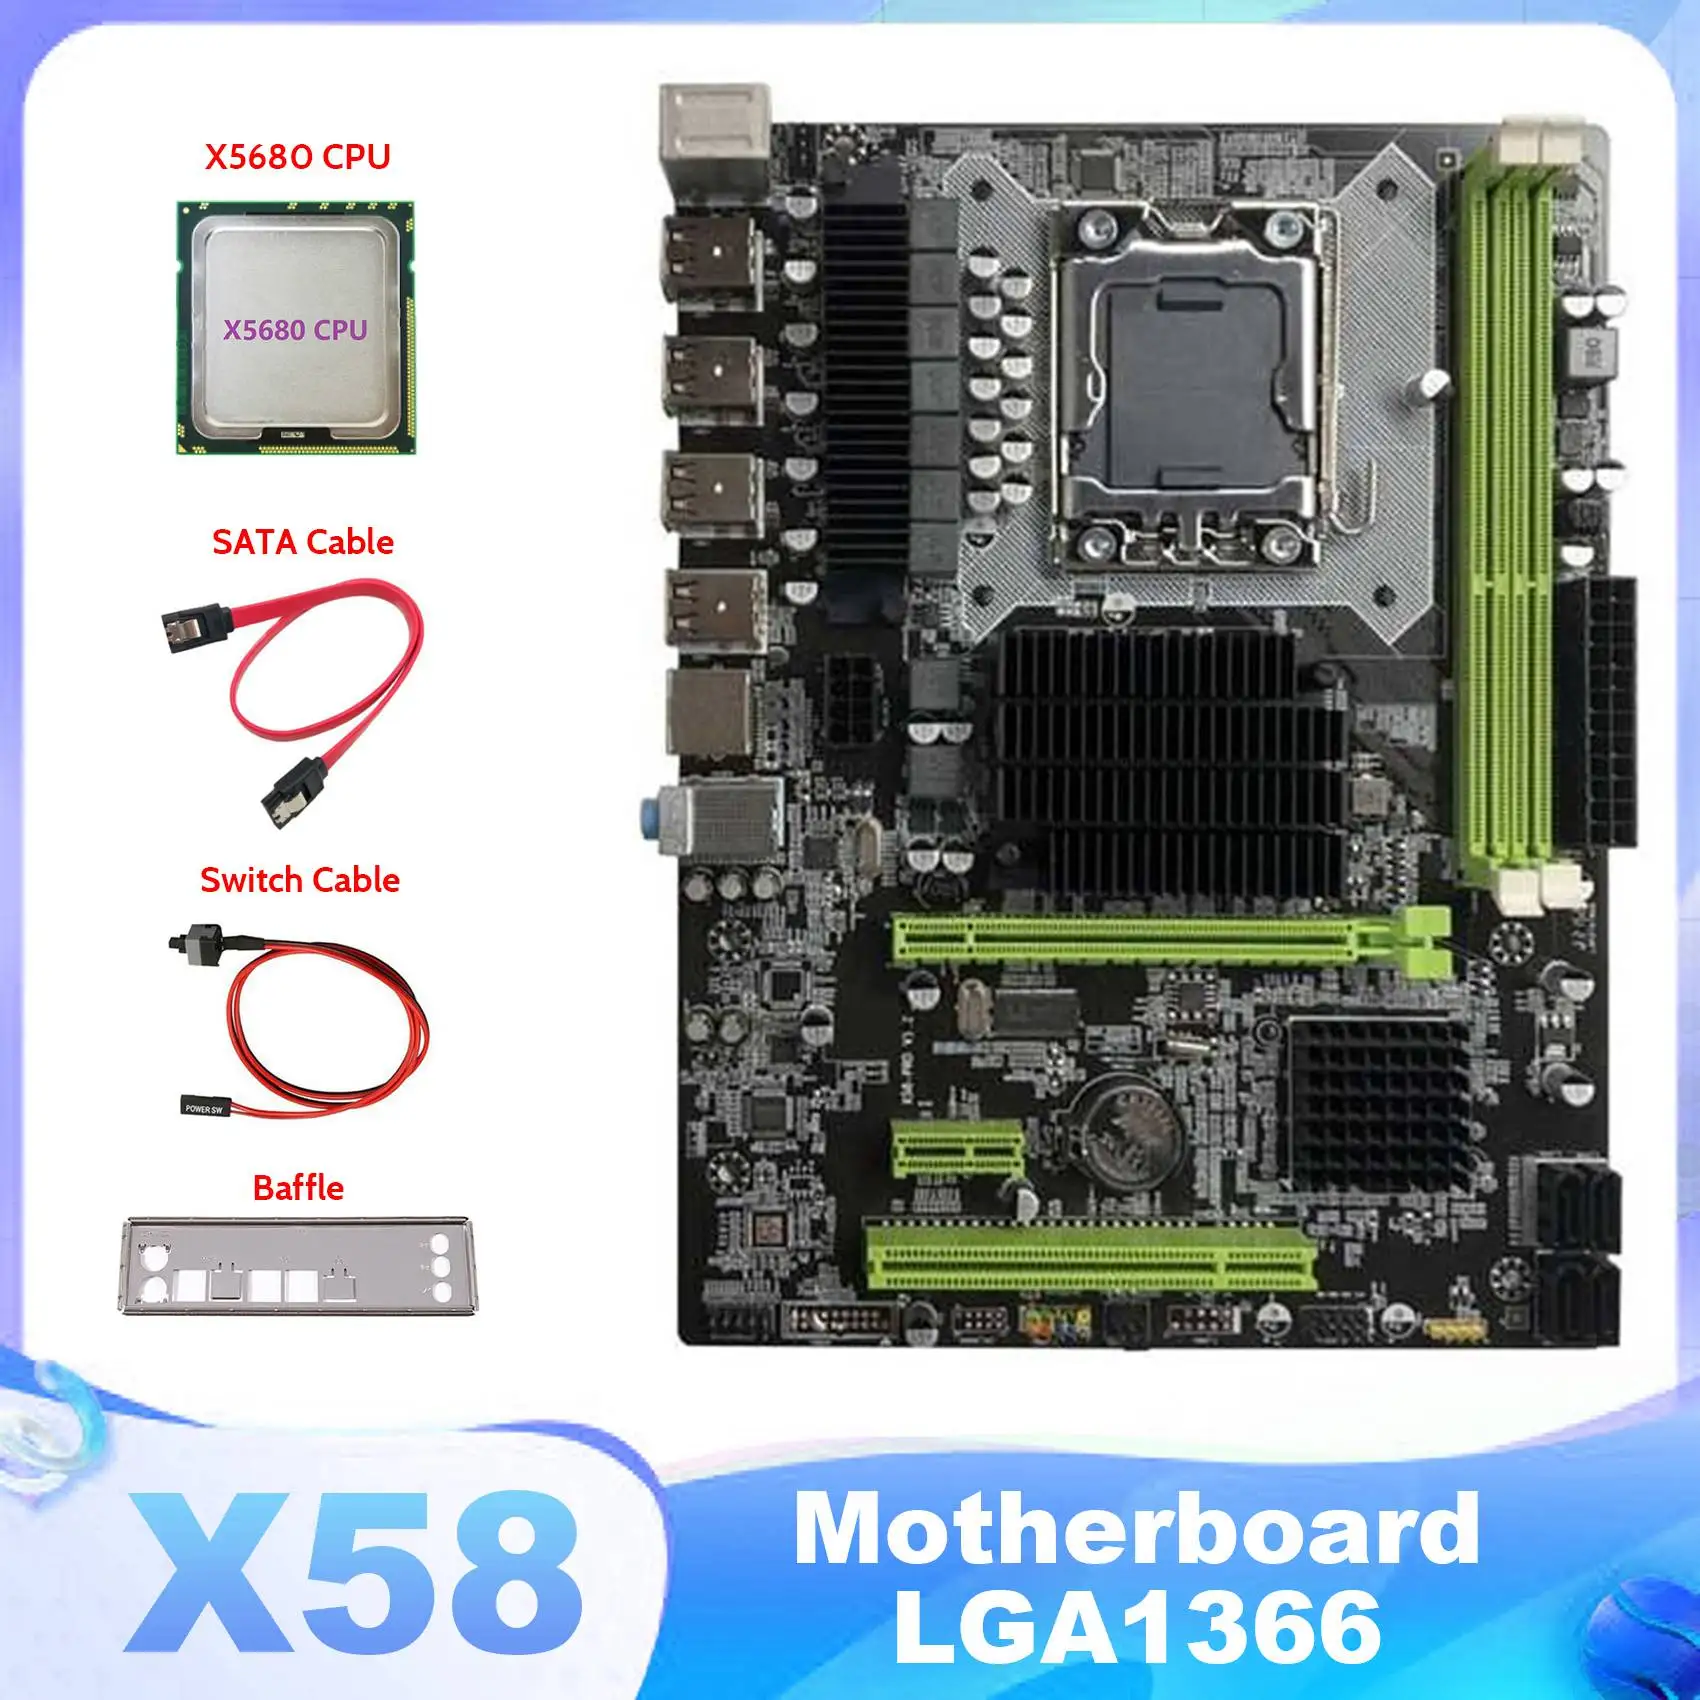 

Материнская плата X58 LGA1366, материнская плата для компьютера, поддержка серверной памяти DDR3 с процессором X5680 + кабель SATA + кабель переключателя